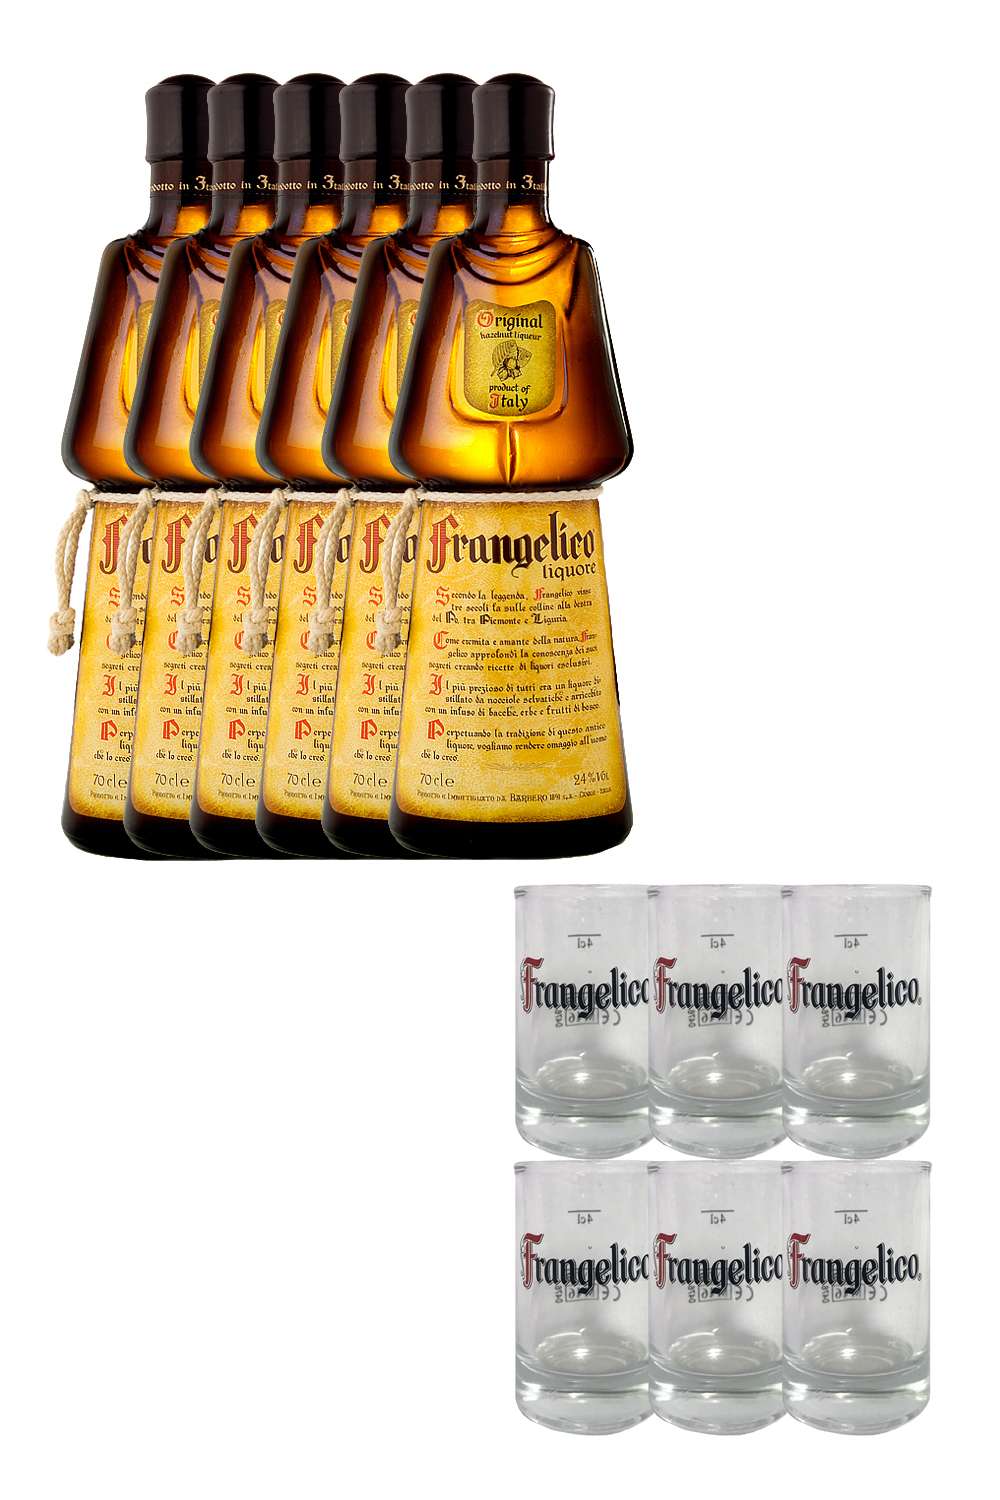 Frangelico Haselnuss 6 x 0,7 + Gläser ist preiswerter Online Ihr Getraenke-Handel.com - 6 Liter Spirituosen